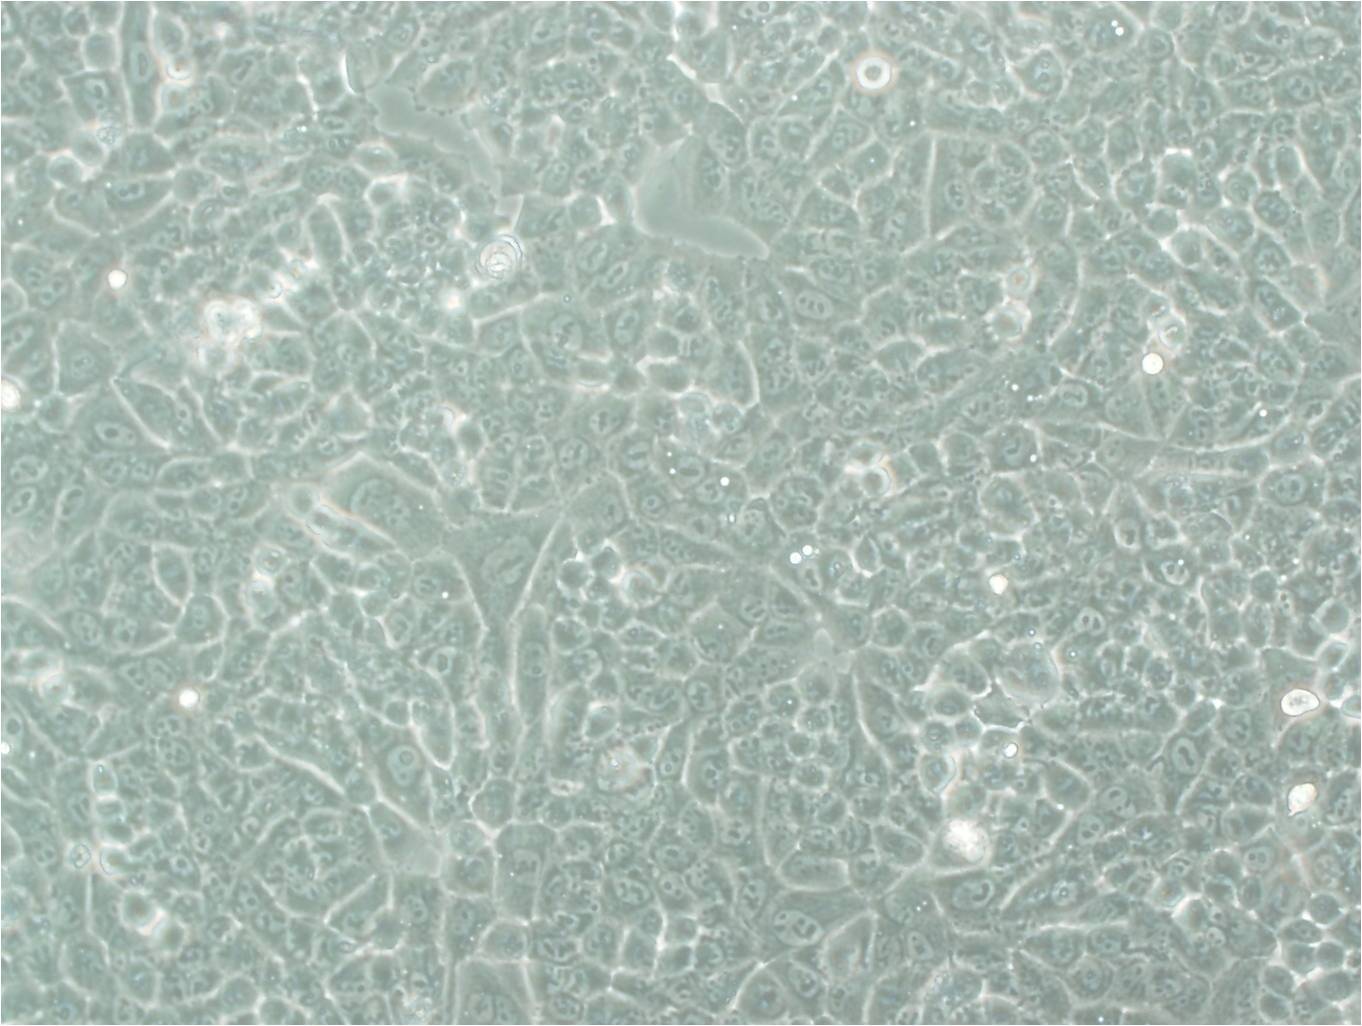 MX-1 cell line人乳腺癌细胞系